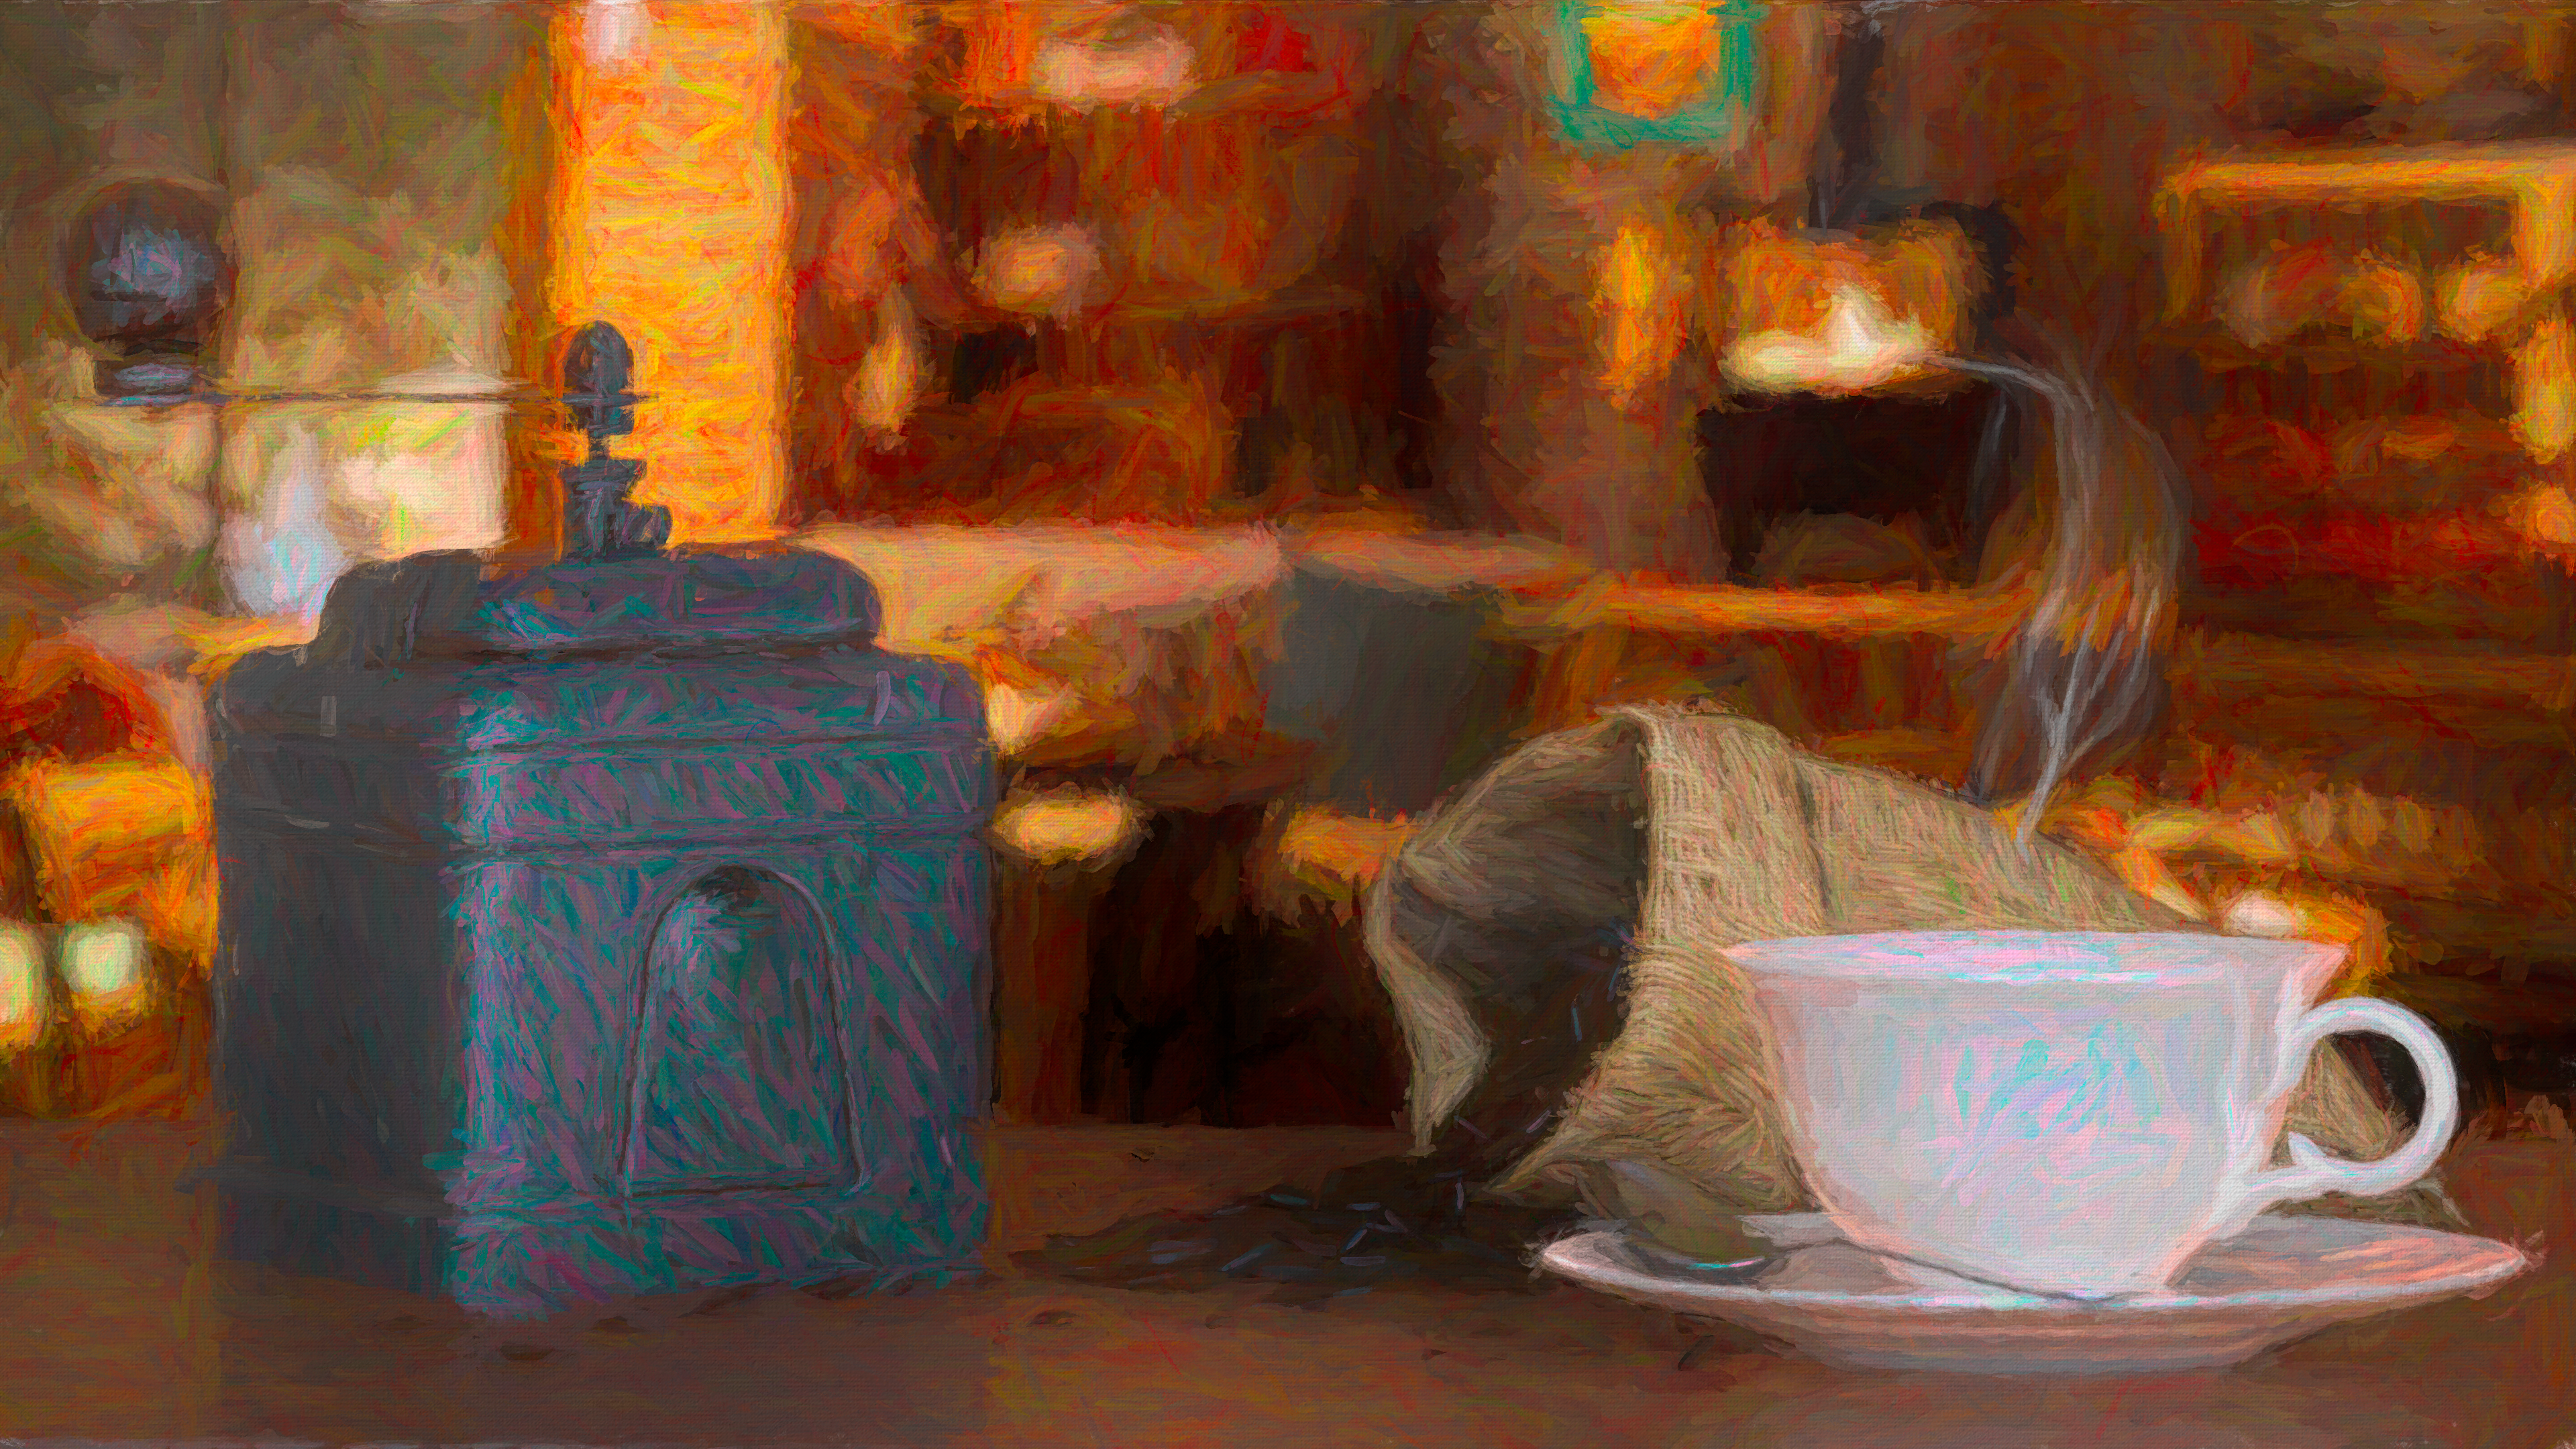 General 3840x2160 CGI digital art shaders oil painting coffee artwork 4K